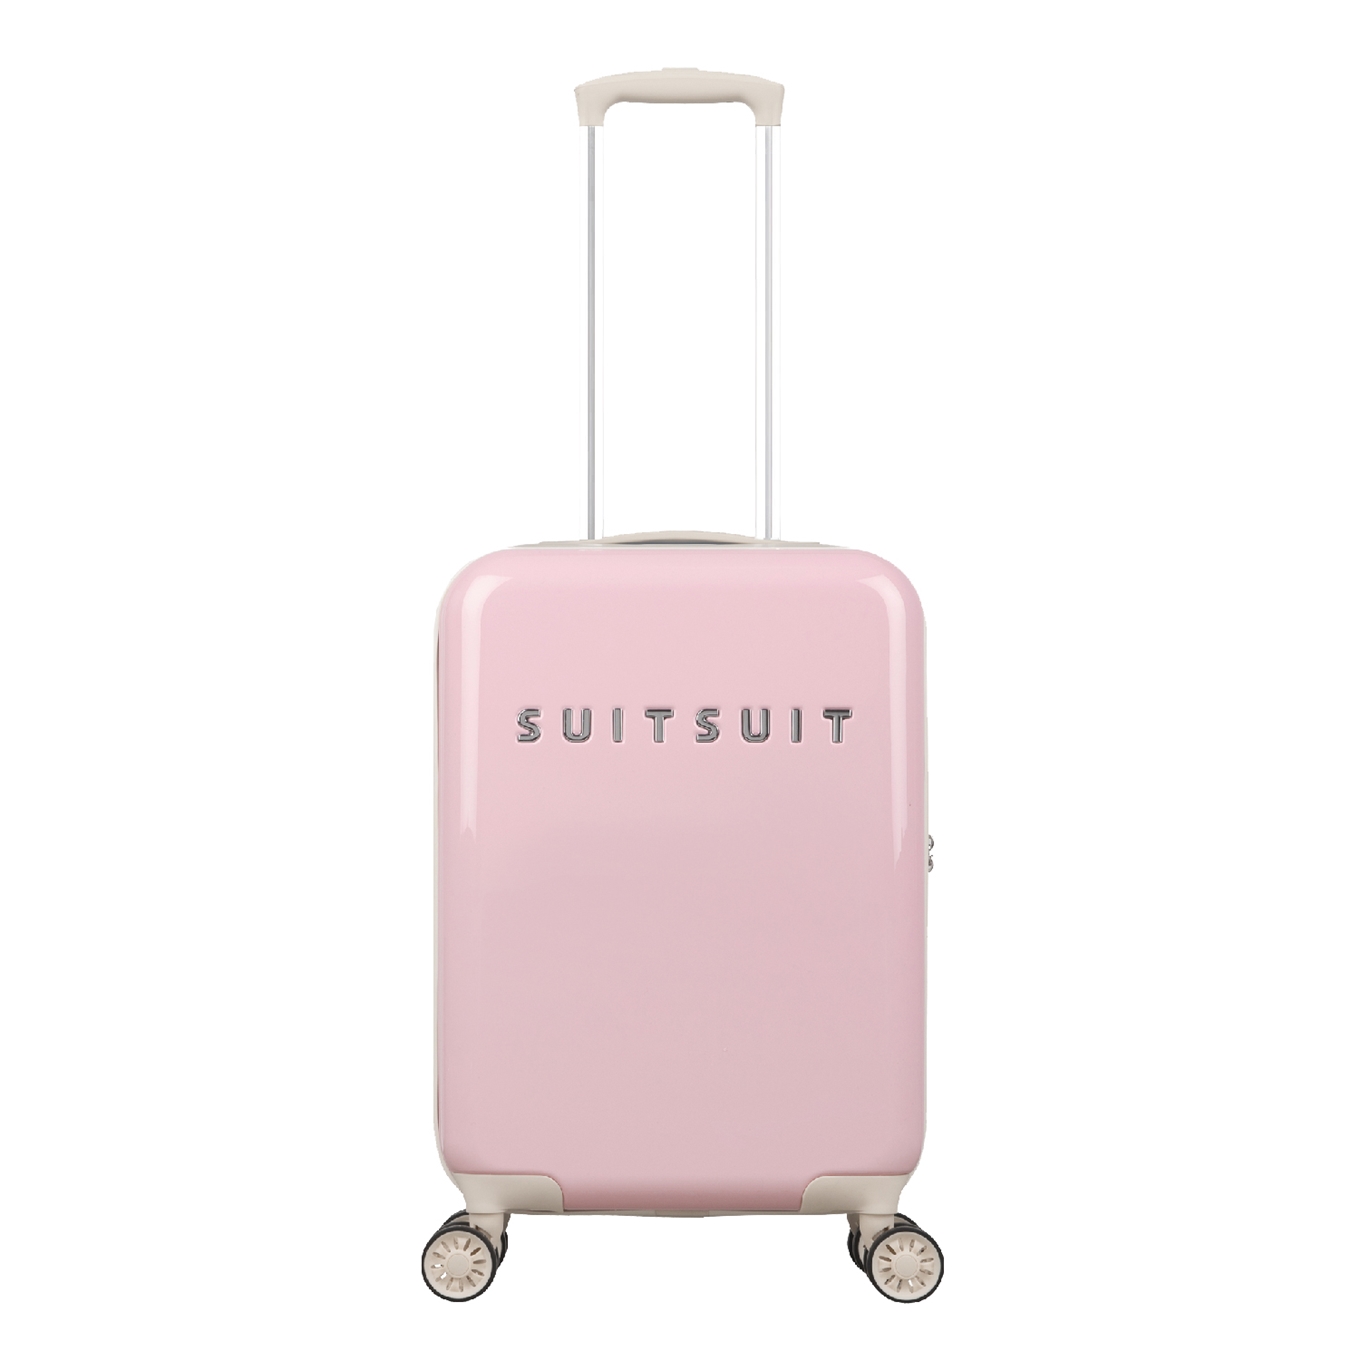 persoon verkouden worden seks SuitSuit koffer kopen » 150+ SuitSuit koffers - Koffervergelijker.nl